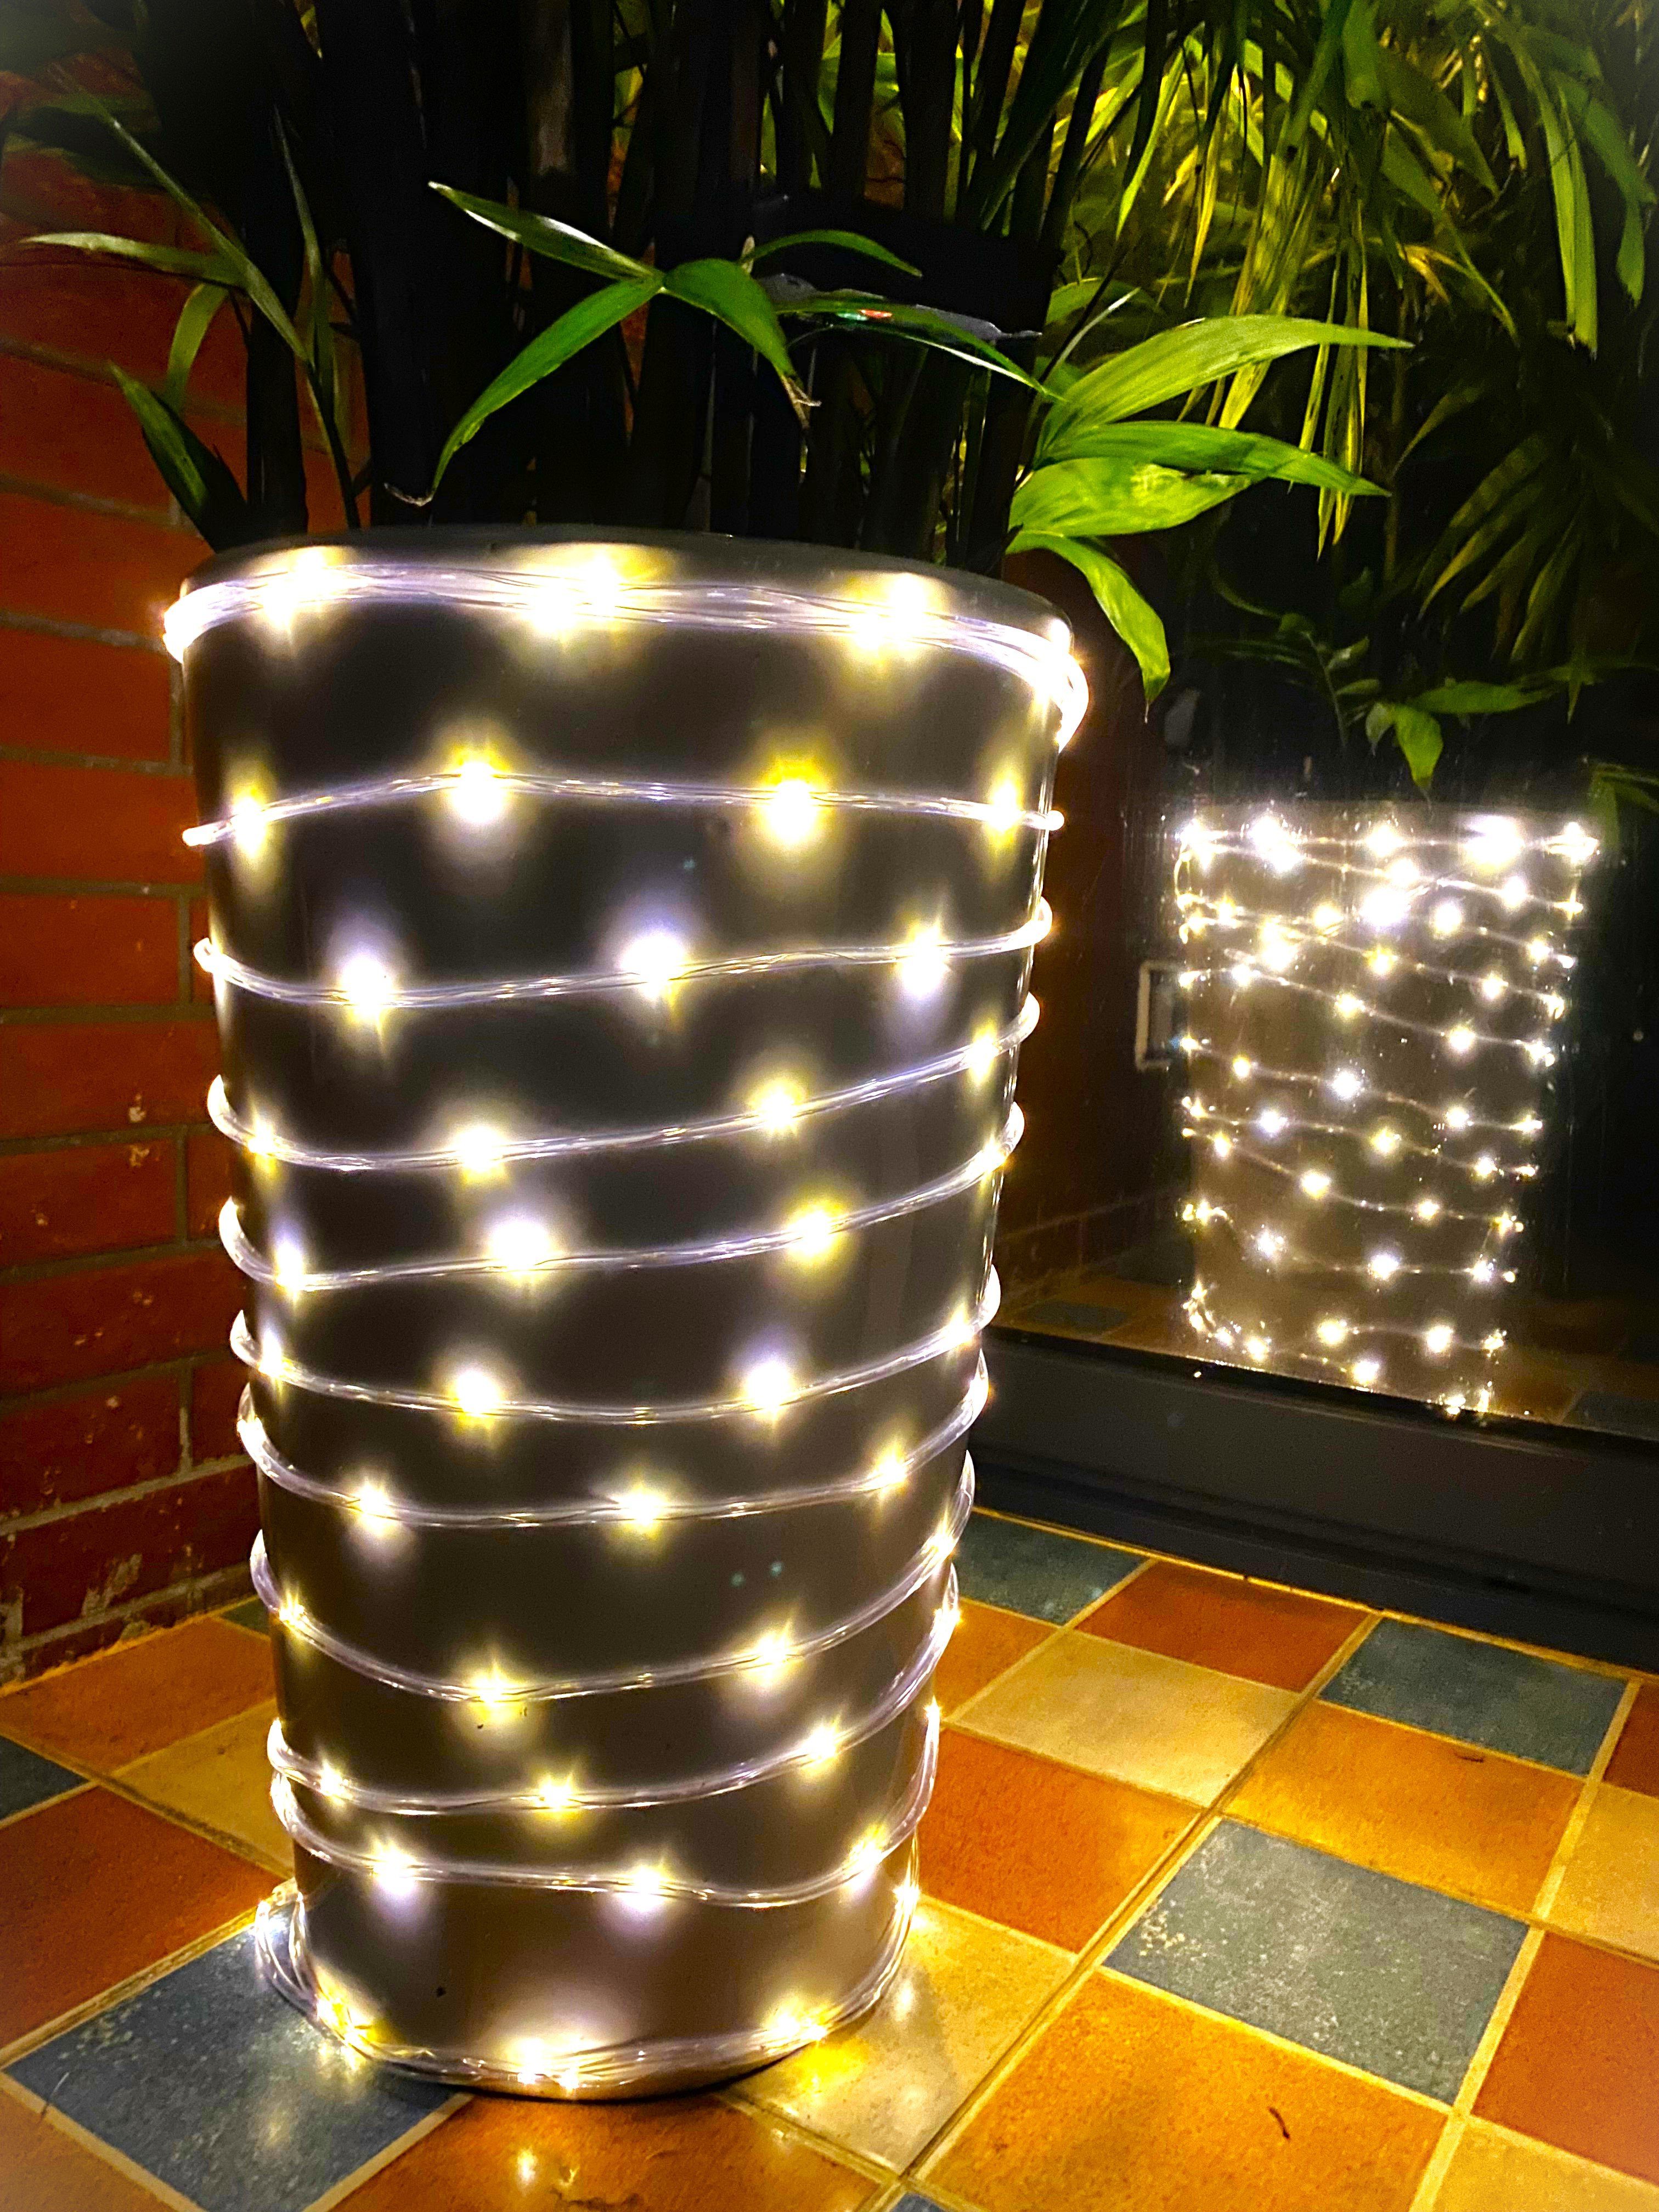 125L,Weihnachtsbeleuchtung, Außen.8 warm 125-flammig, Innen Kleelein & Lichterschlauch weiße Modi, LED-Lichterkette Solar LED